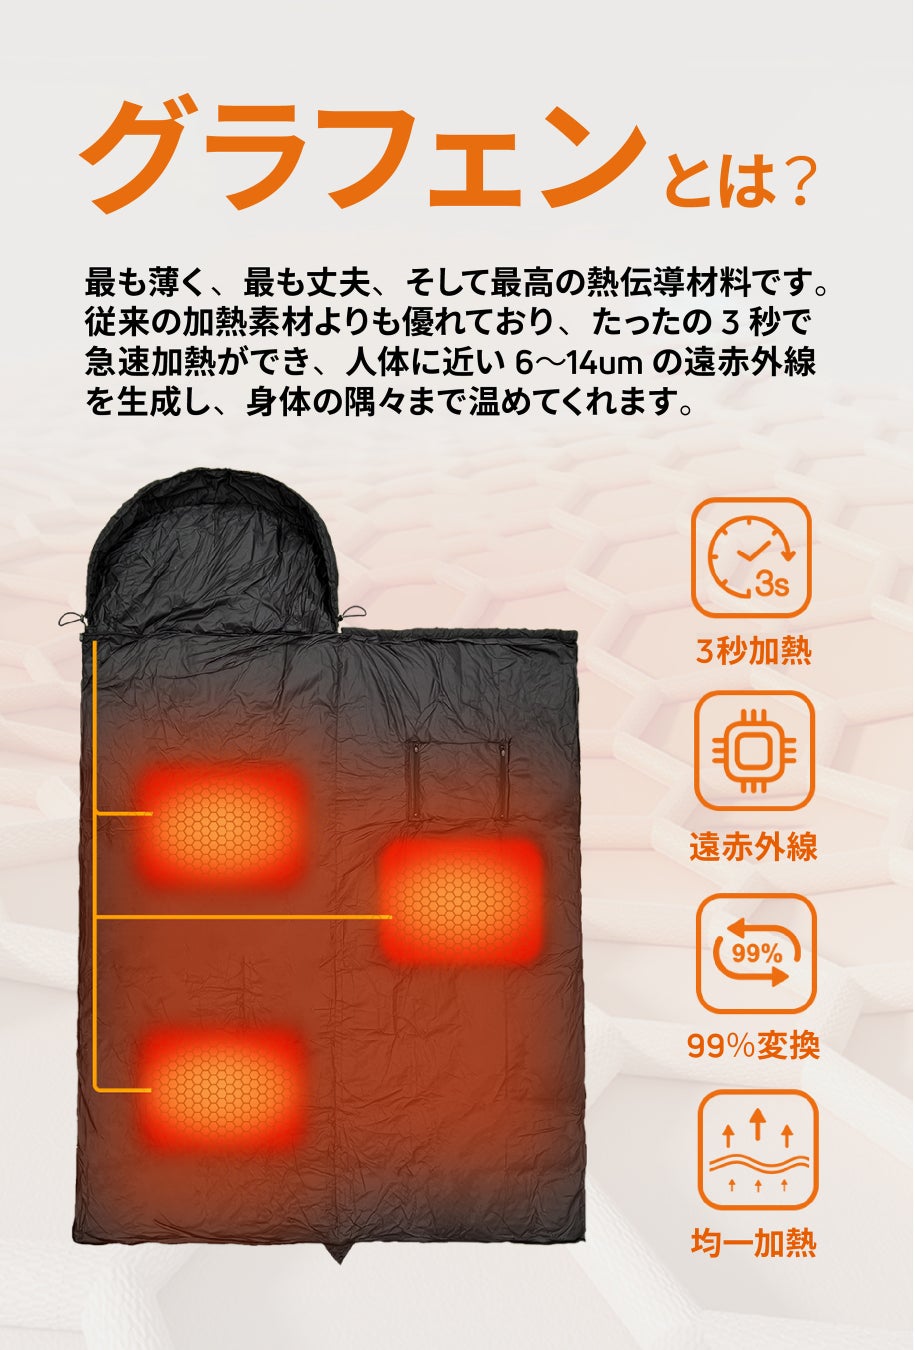 【日本初上陸記念！10セット限定53%オフ】ワンタッチで3秒加熱！最新のテクノロジーを採用！アウトドアで大活躍な電熱寝袋「Gamp-Futon」クラウドファンディング開始のサブ画像2